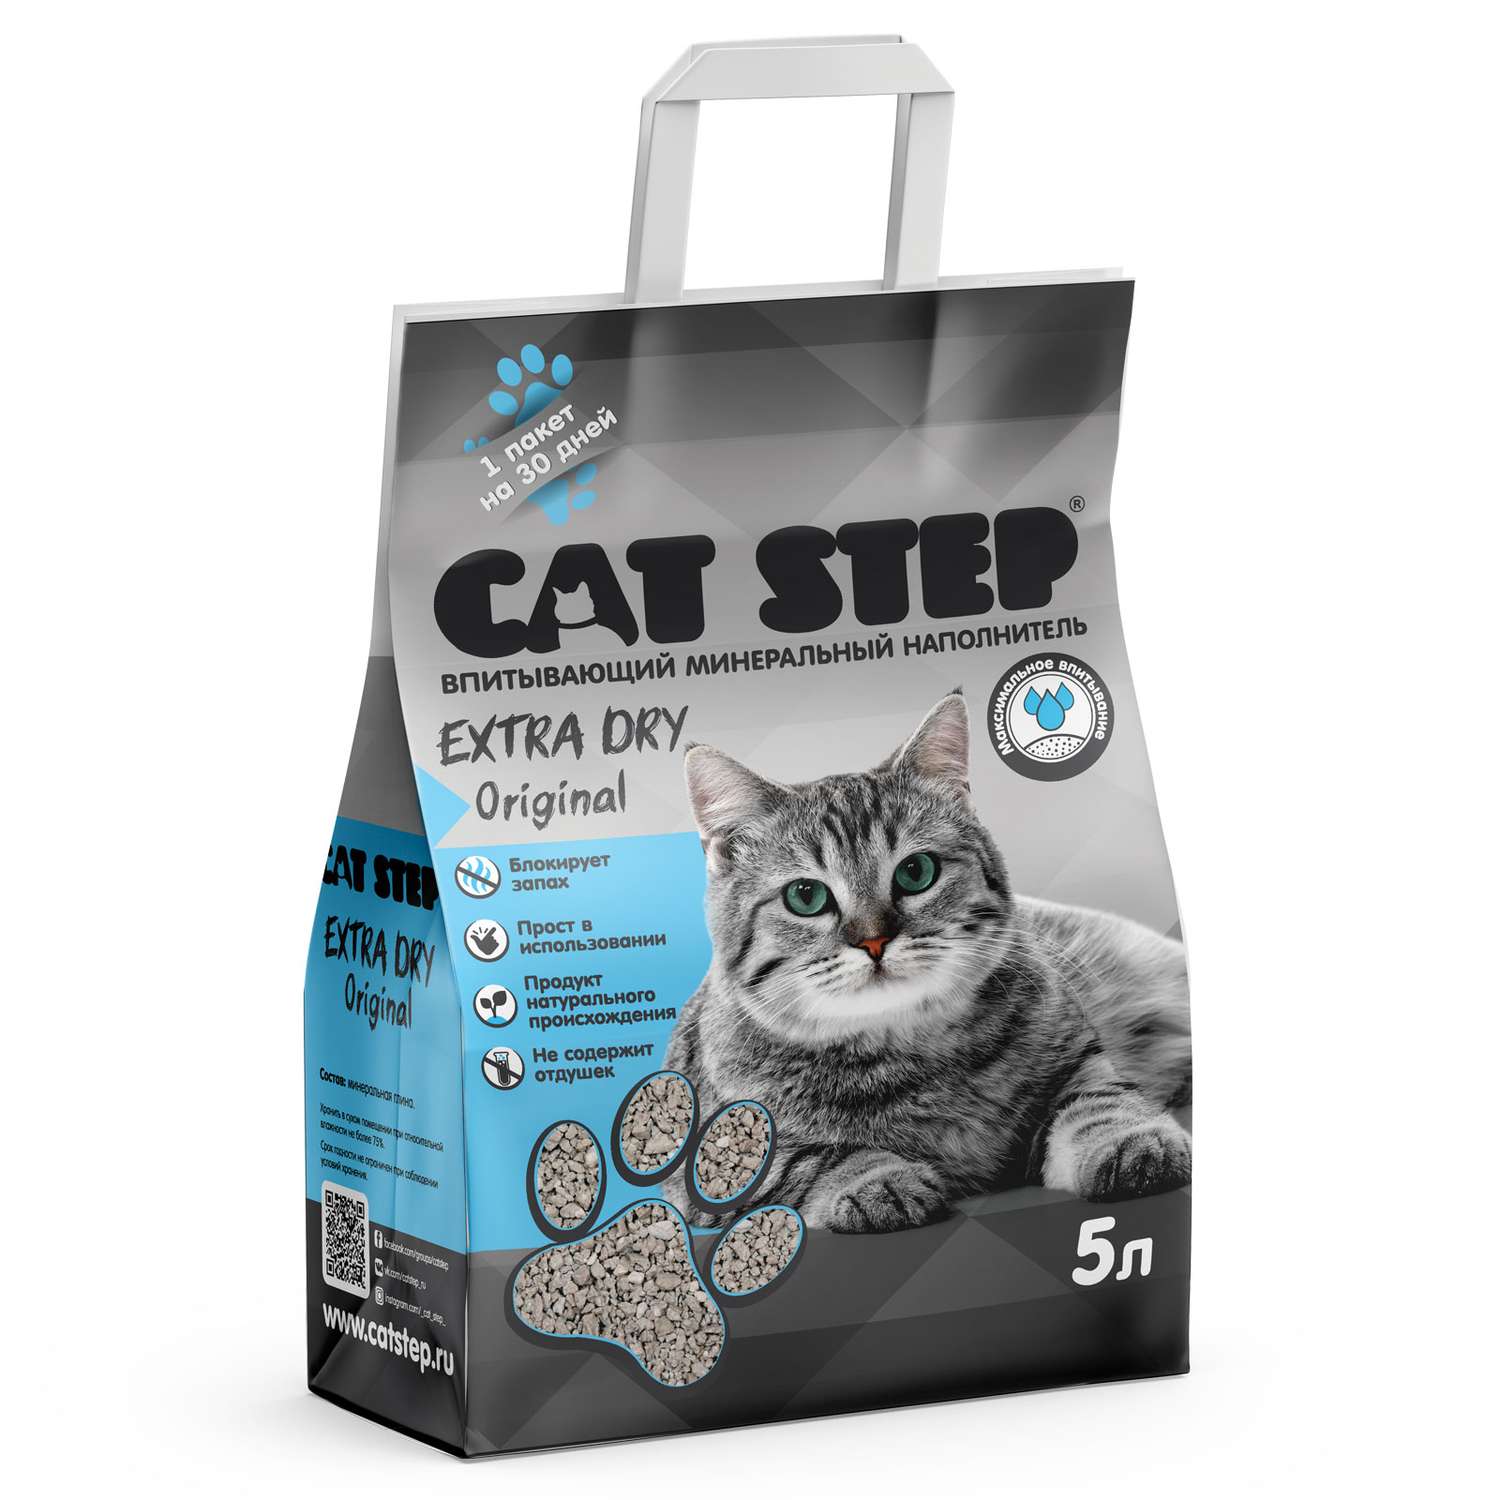 Наполнитель для кошачьего туалета Cat Step Extra Dry Original впитывающий минеральный 5л - фото 1